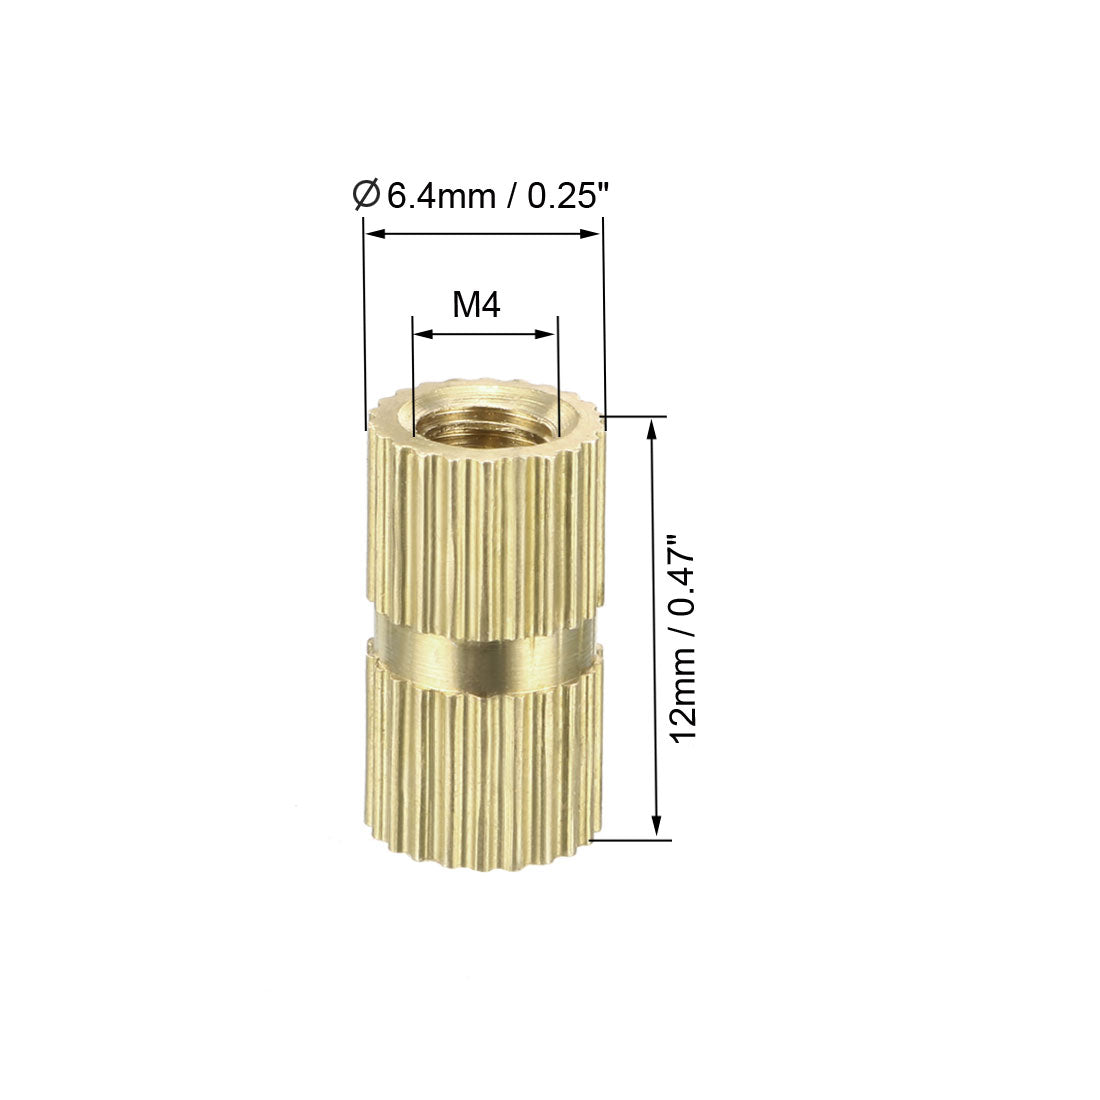 uxcell Uxcell M4 x 12mm(L) x 6.4mm(OD) Female Thread Brass Knurled Threaded Insert Embedment Nuts, 30 Pcs